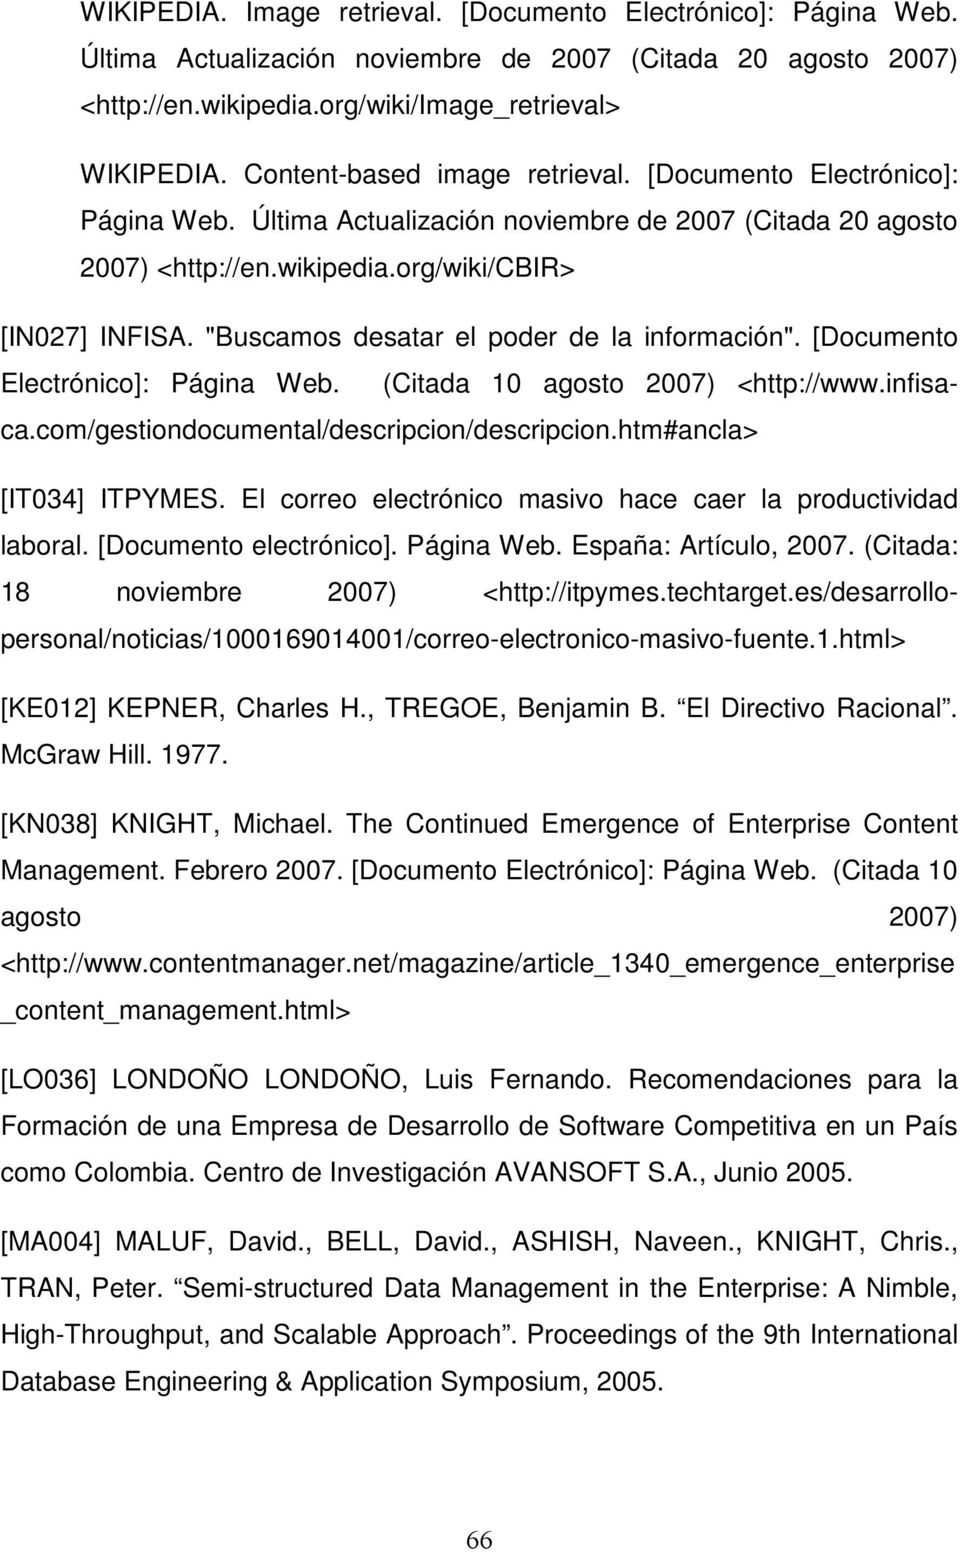 com/gestiondocumental/descripcion/descripcion.htm#ancla> [IT034] ITPYMES. El correo electrónico masivo hace caer la productividad laboral. [Documento electrónico]. Página Web. España: Artículo, 2007.